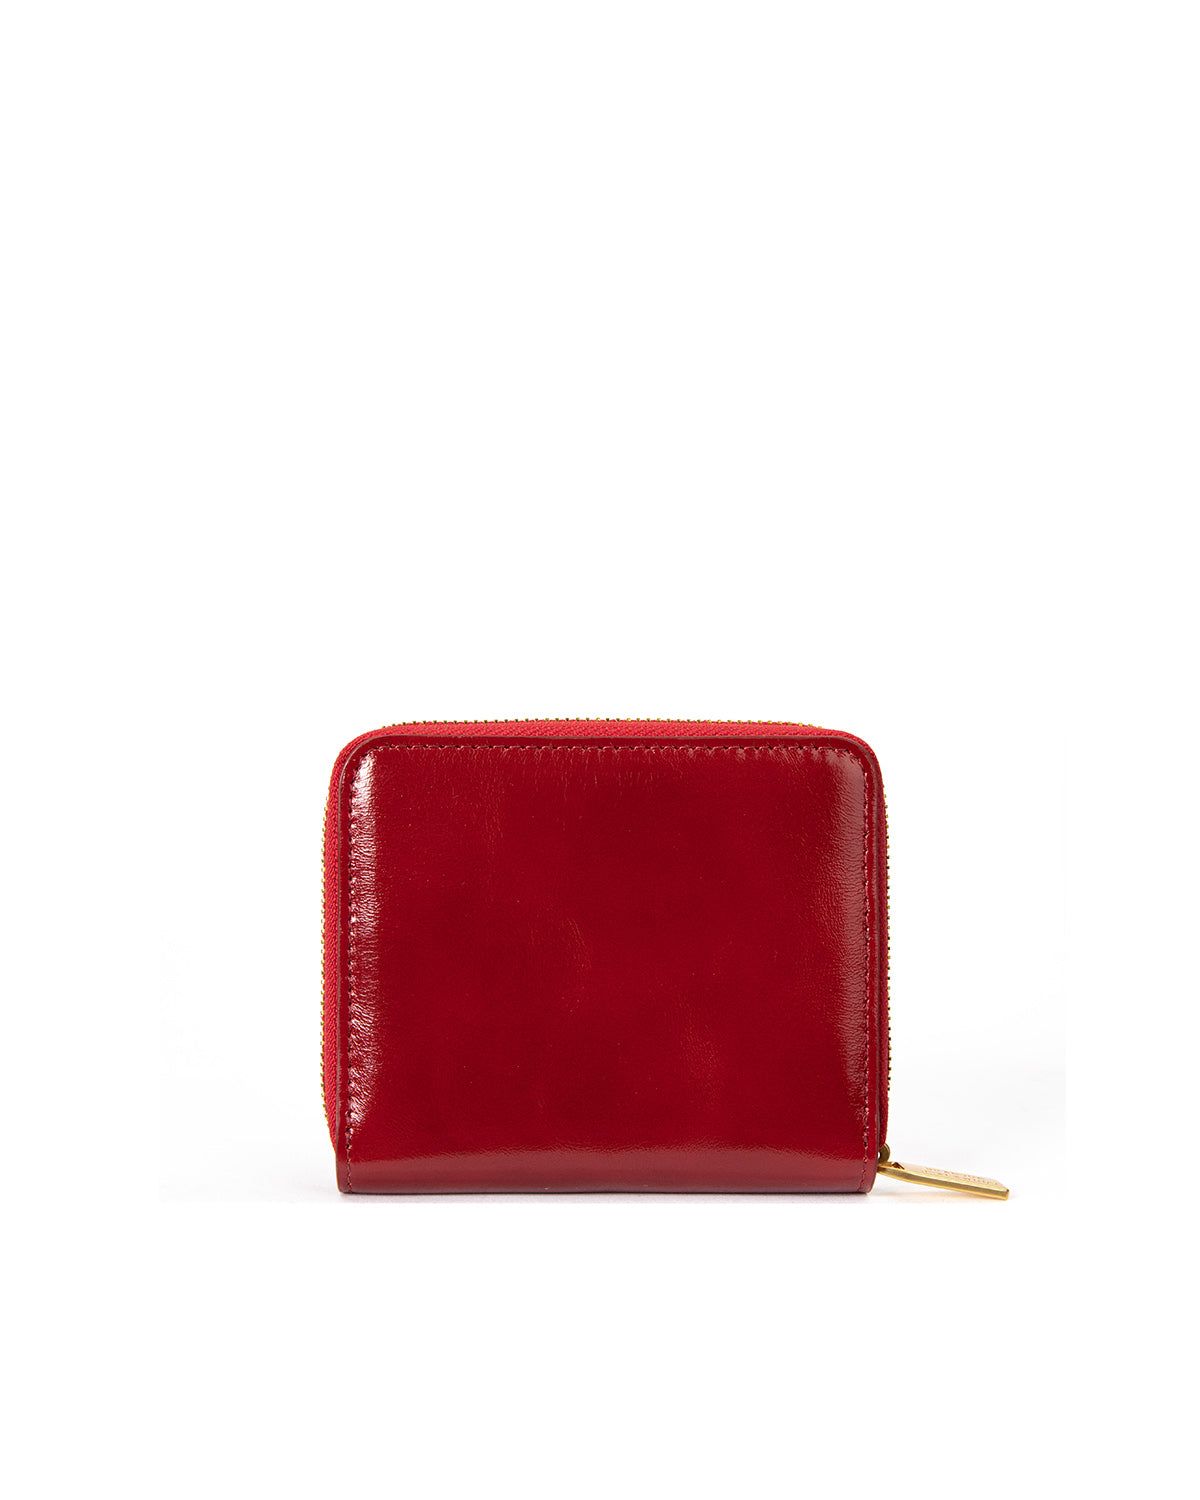 Qoo10 - Megga Leather Oil Wax Ox Skin Women Wallet MG2129 : Bag & Wallet